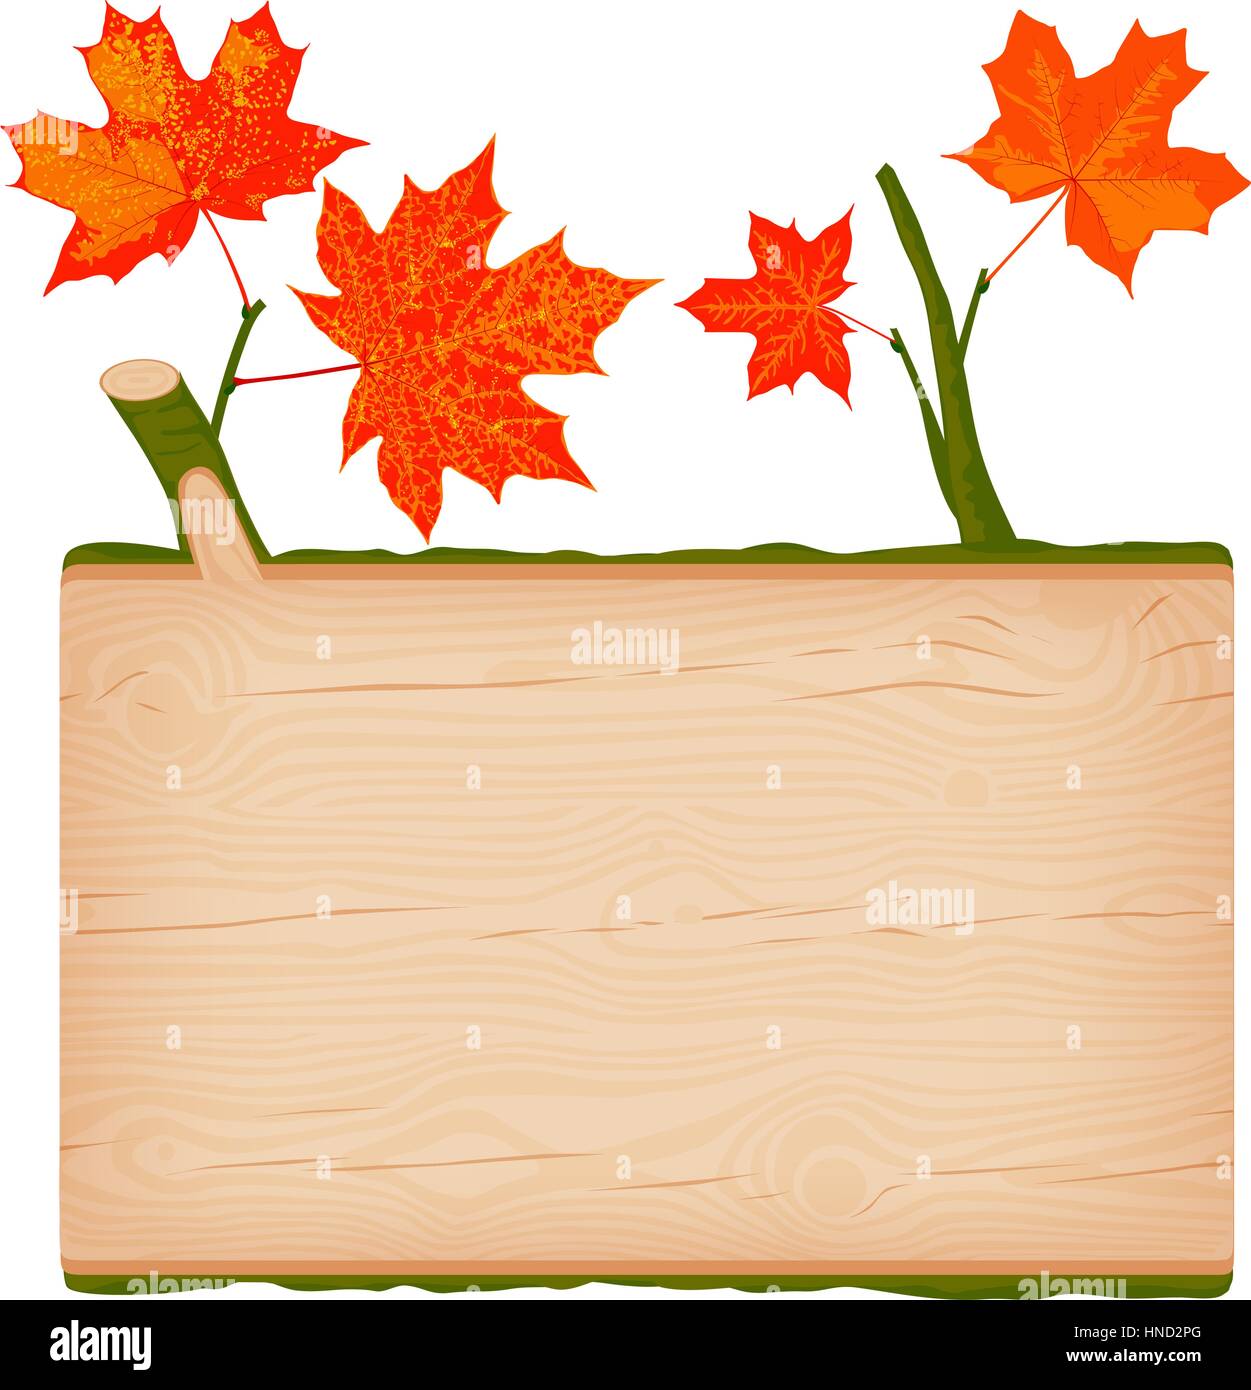 Testurizzato naturale in legno di acero cartello rettangolare di colore rosso con foglie di autunno illustrazione vettoriale Illustrazione Vettoriale